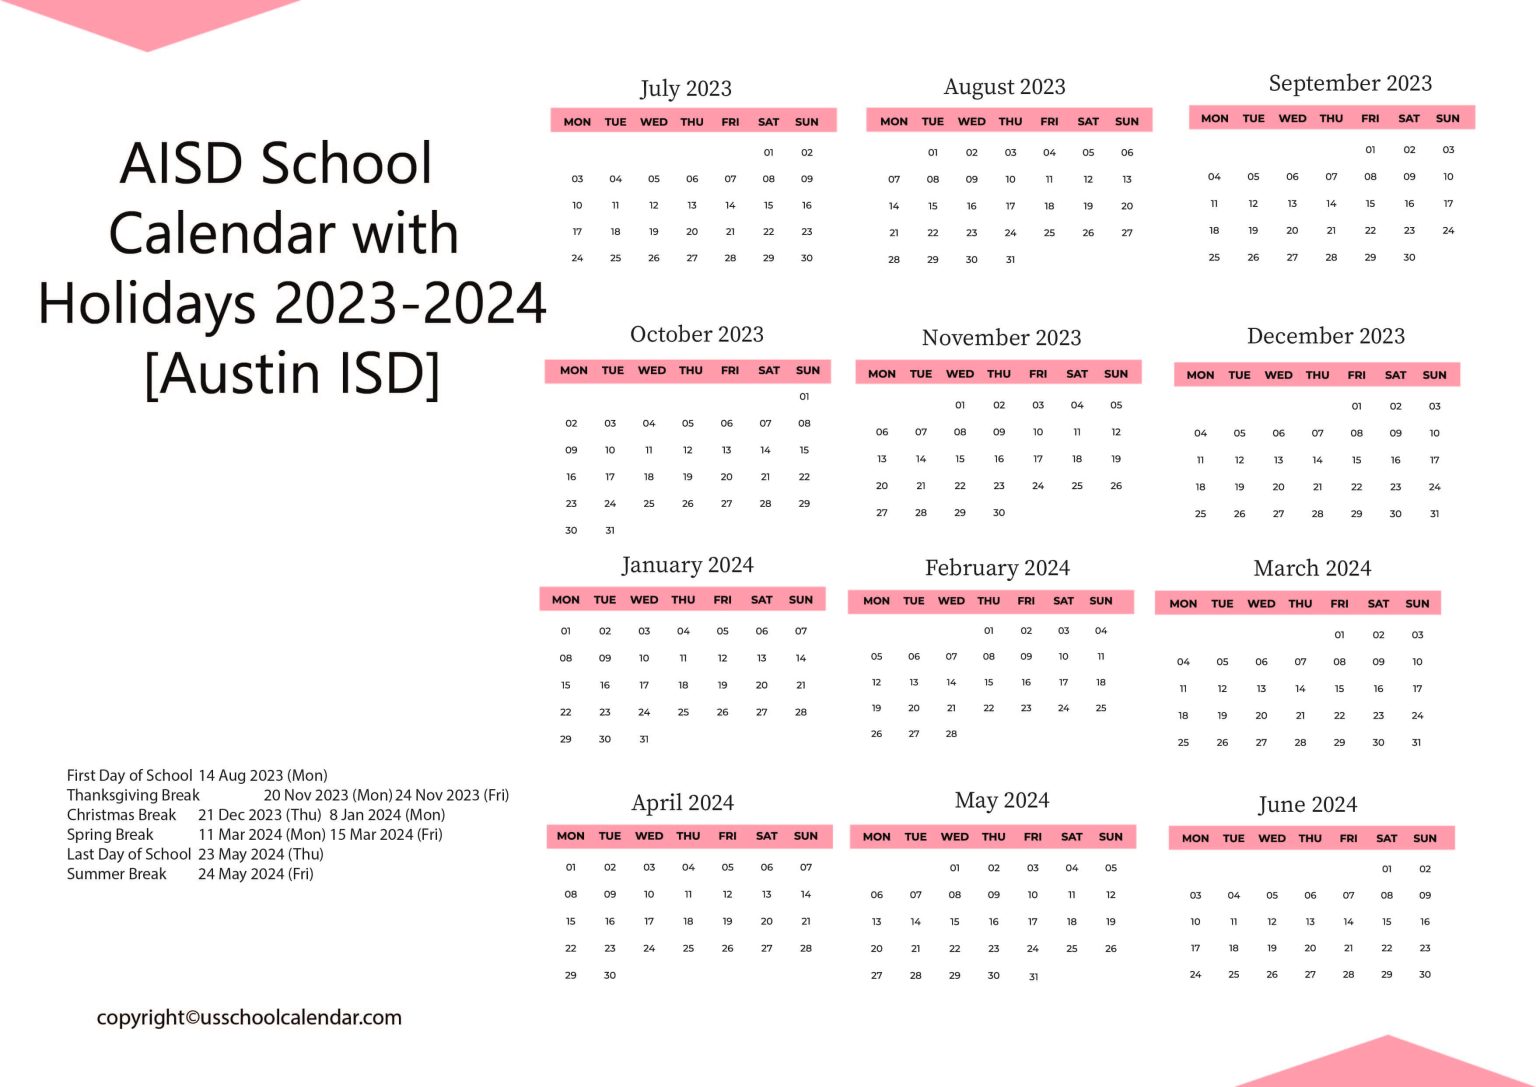 aisd-school-calendar-with-holidays-2023-2024-austin-isd